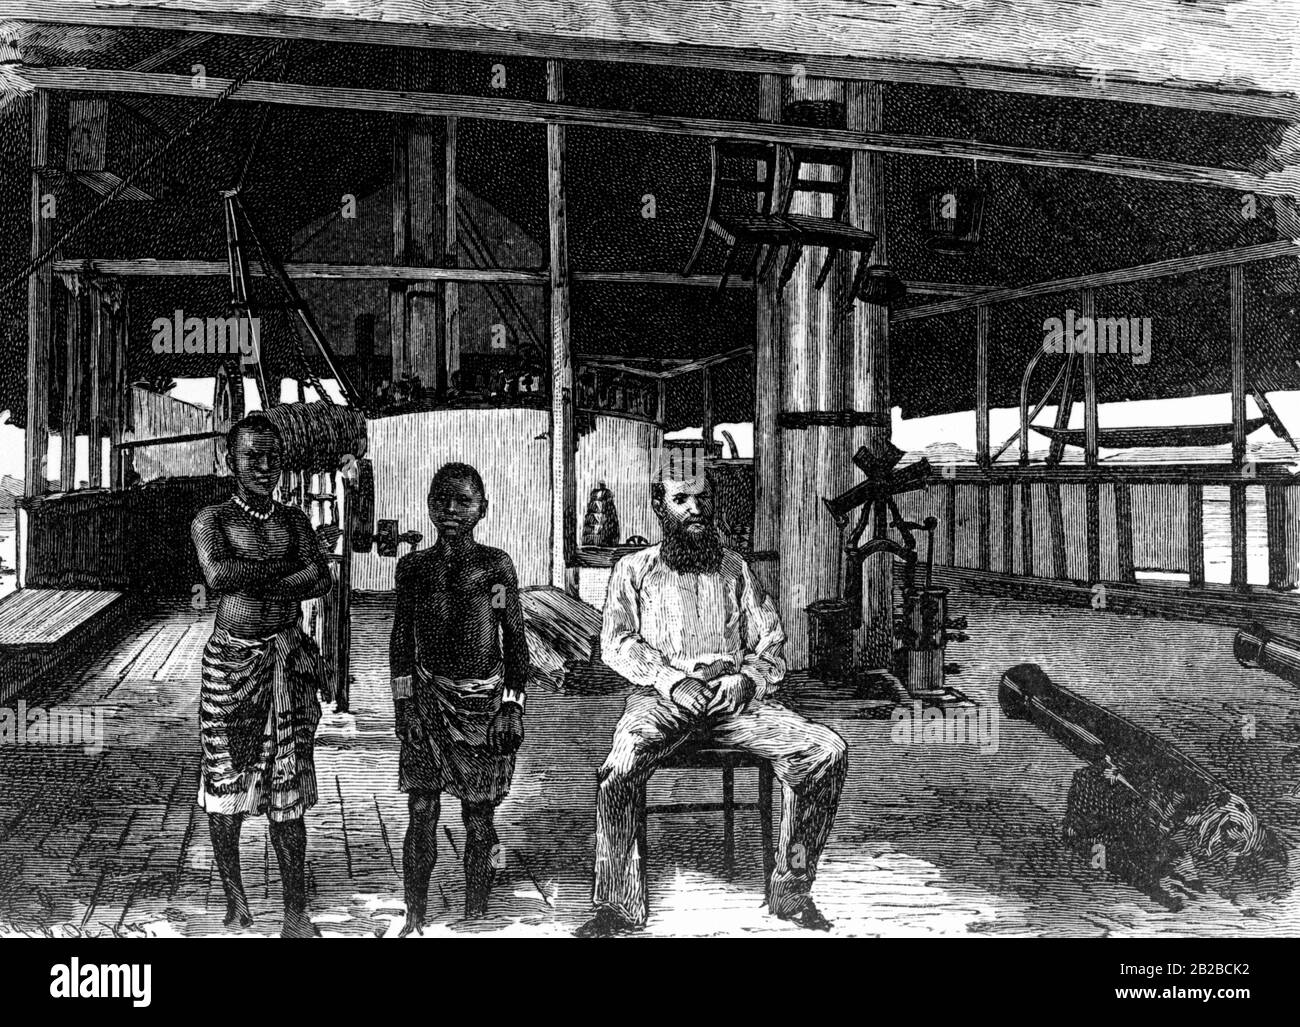 Foto della scula del Woermann del mercante d'oltremare Carl Woermann sul fiume Wouri nella colonia tedesca del Camerun. Disegno non ondulato. Foto Stock